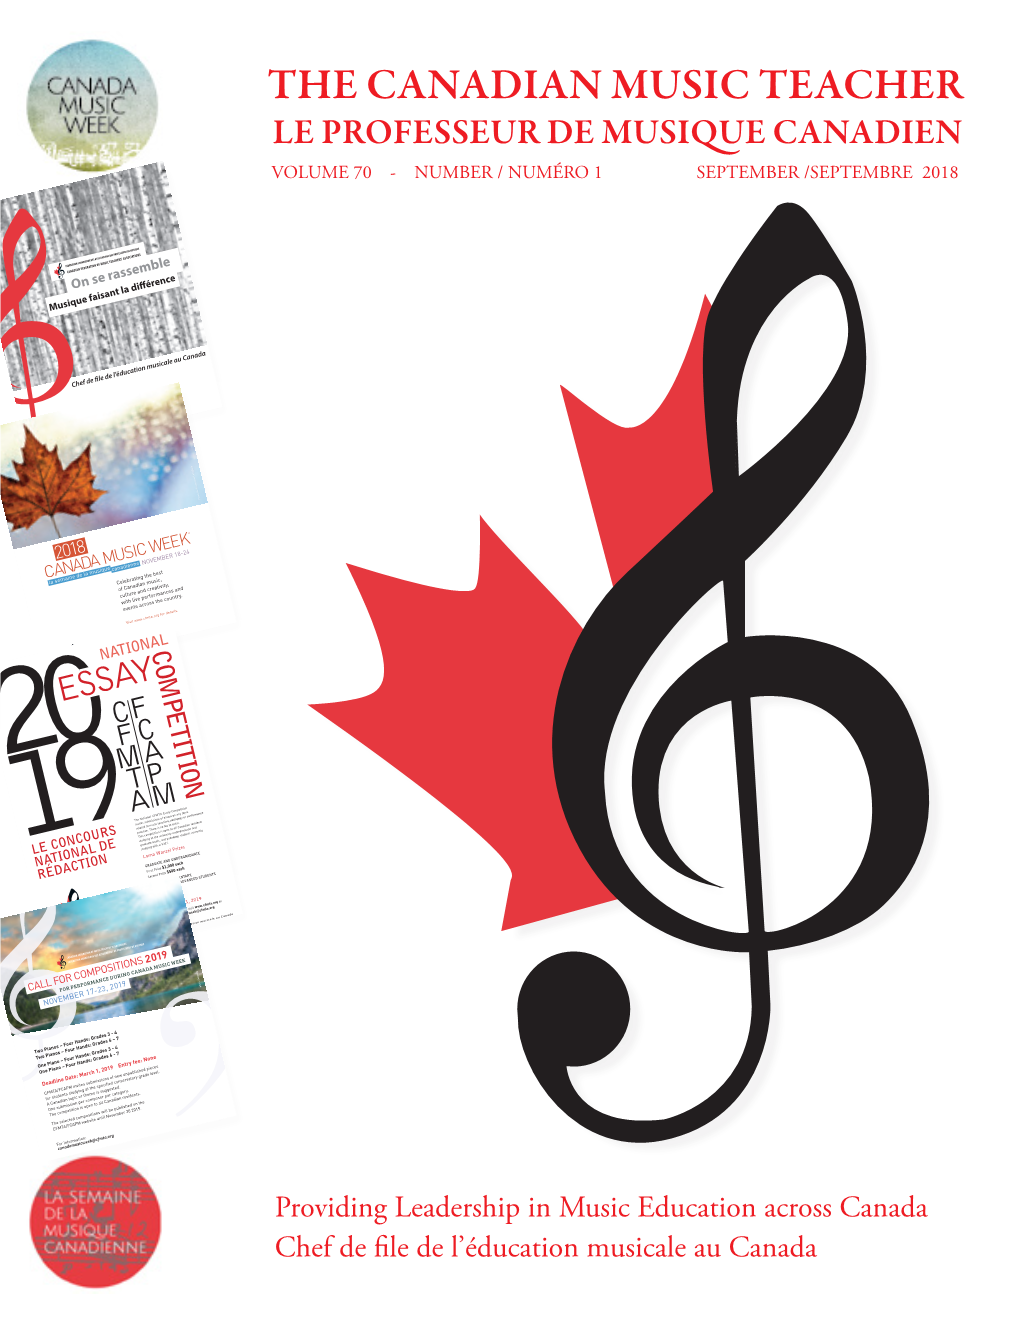 The Canadian Music Teacher Le Professeur De Musique Canadien Volume 70 - Number / Numéro 1 September /Septembre 2018